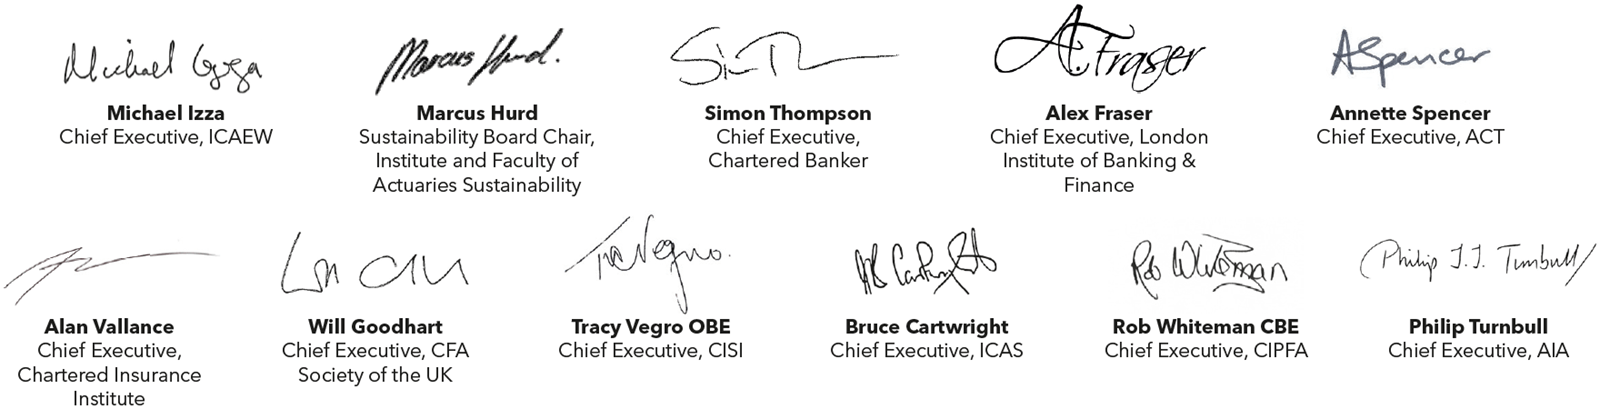 The 11 signatories